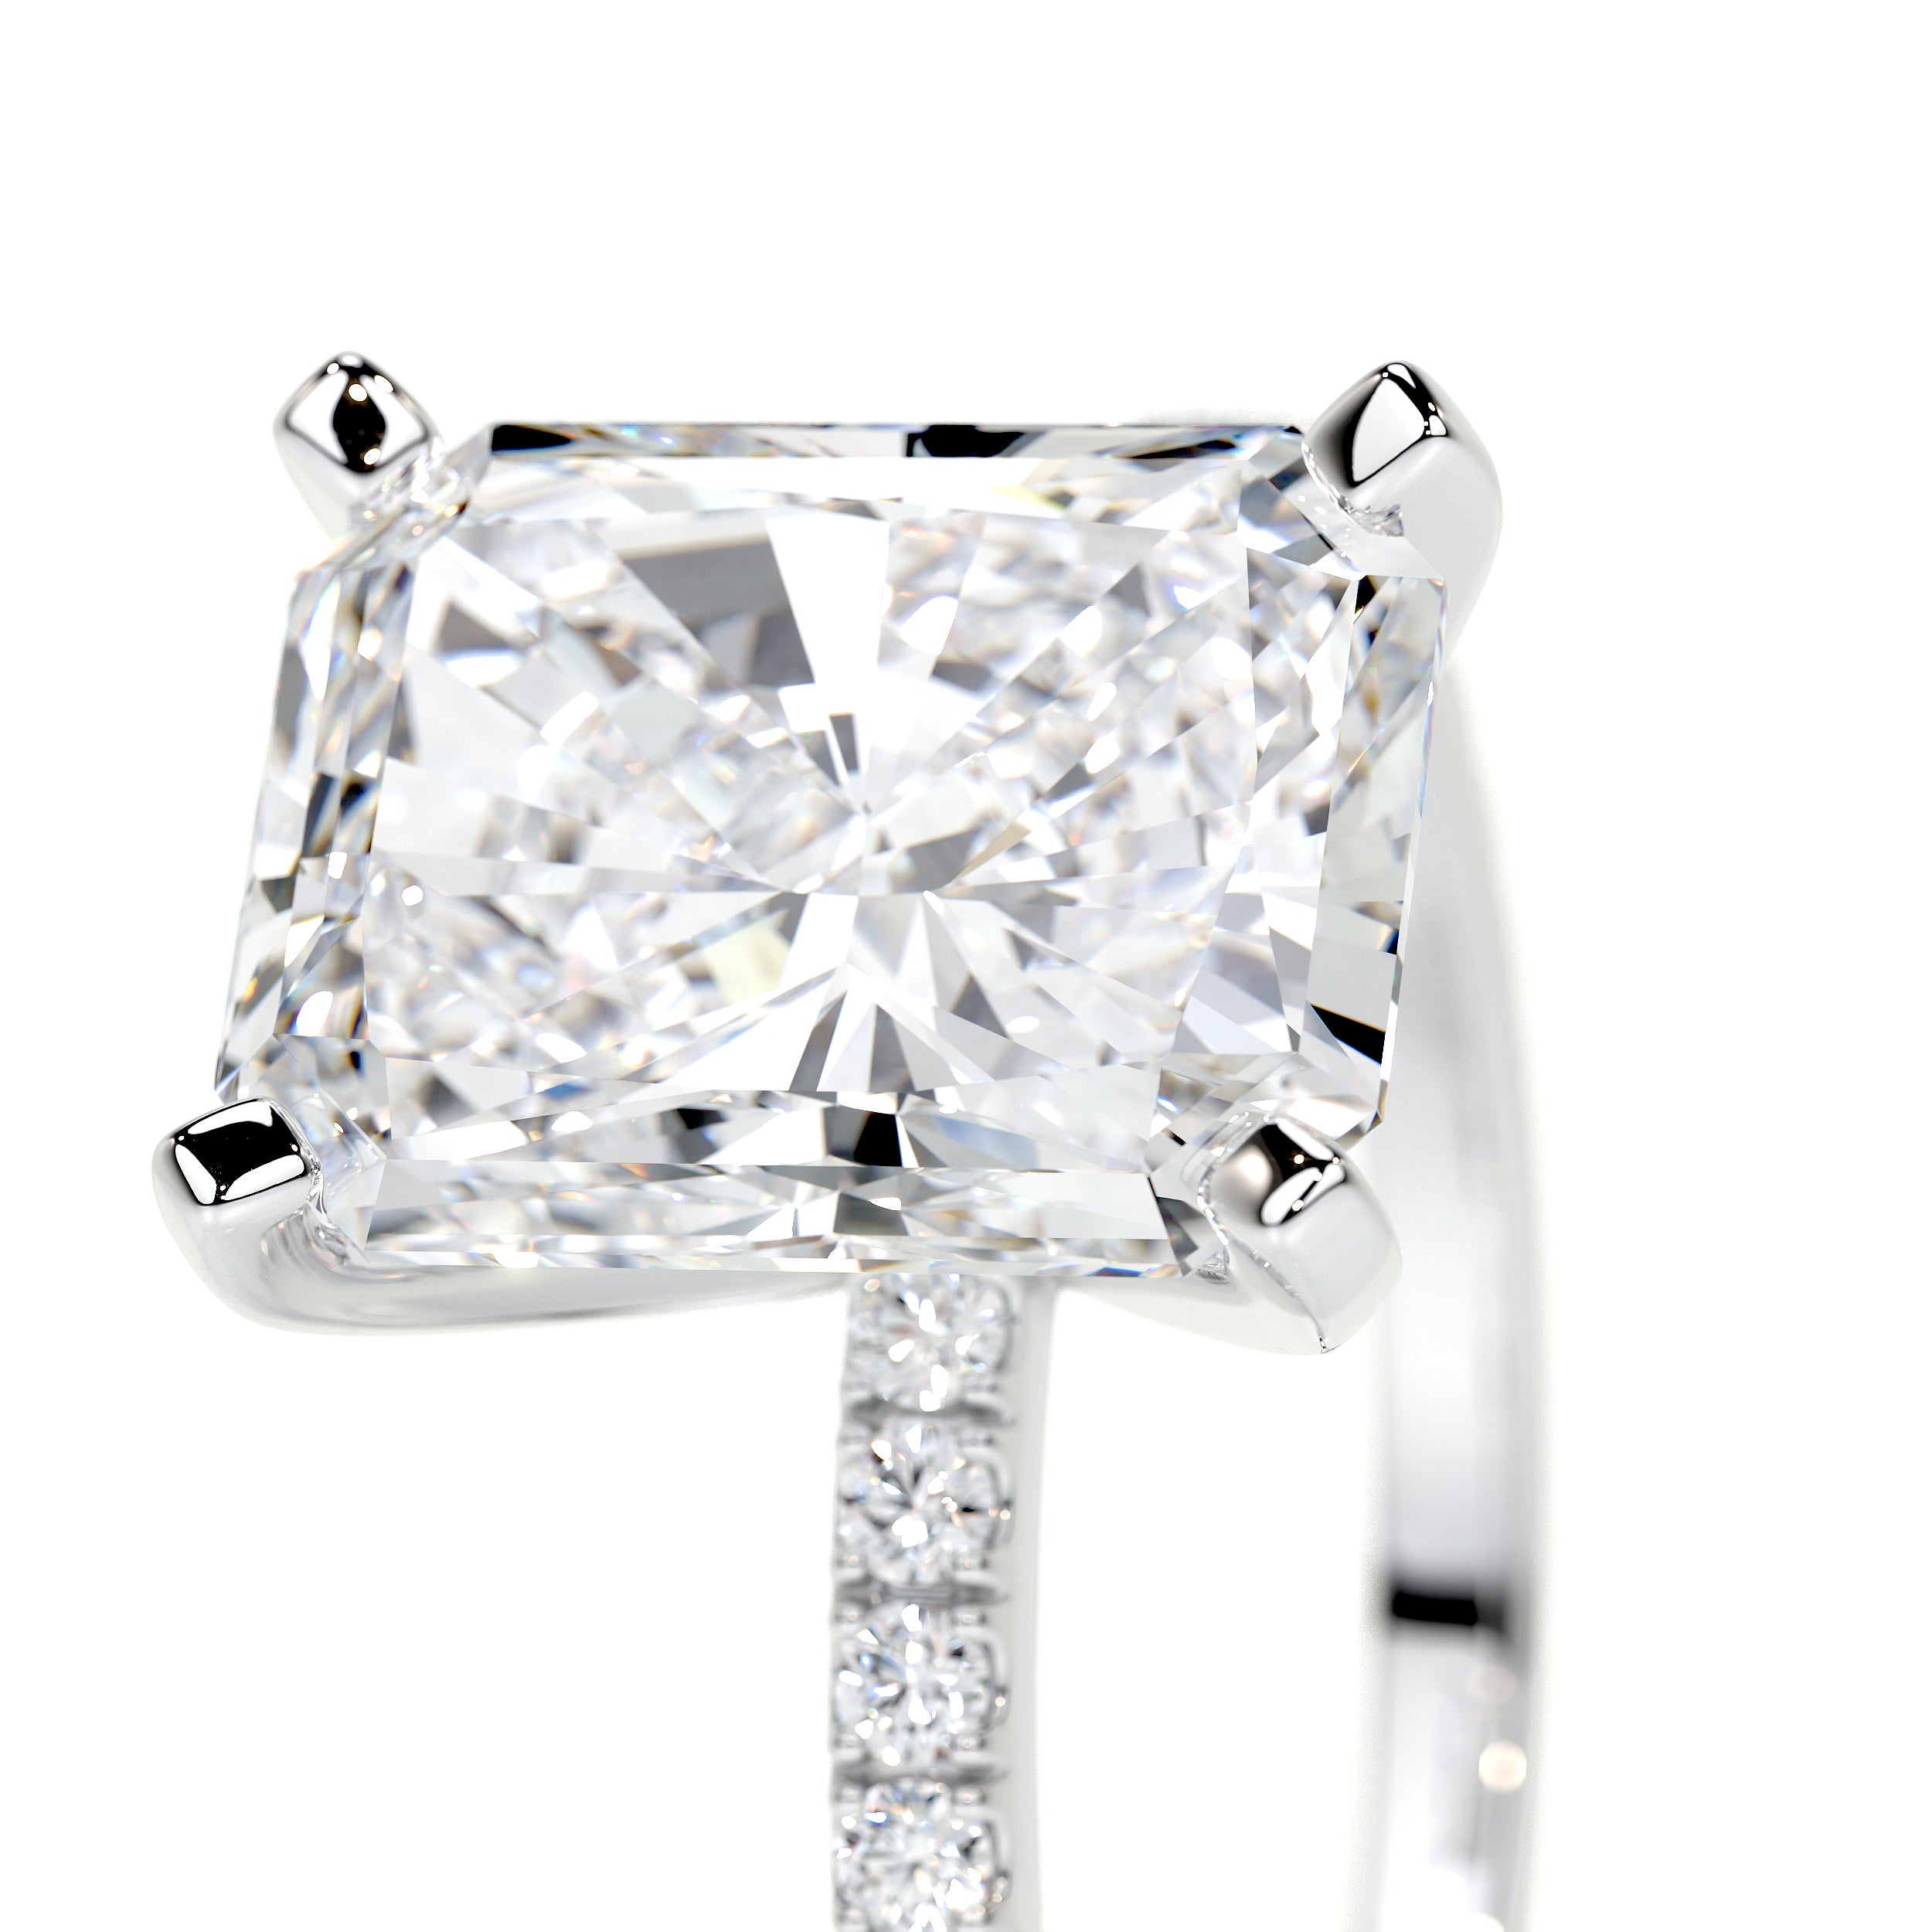 Audrey Lab Grown Diamond Ring -18K White Gold